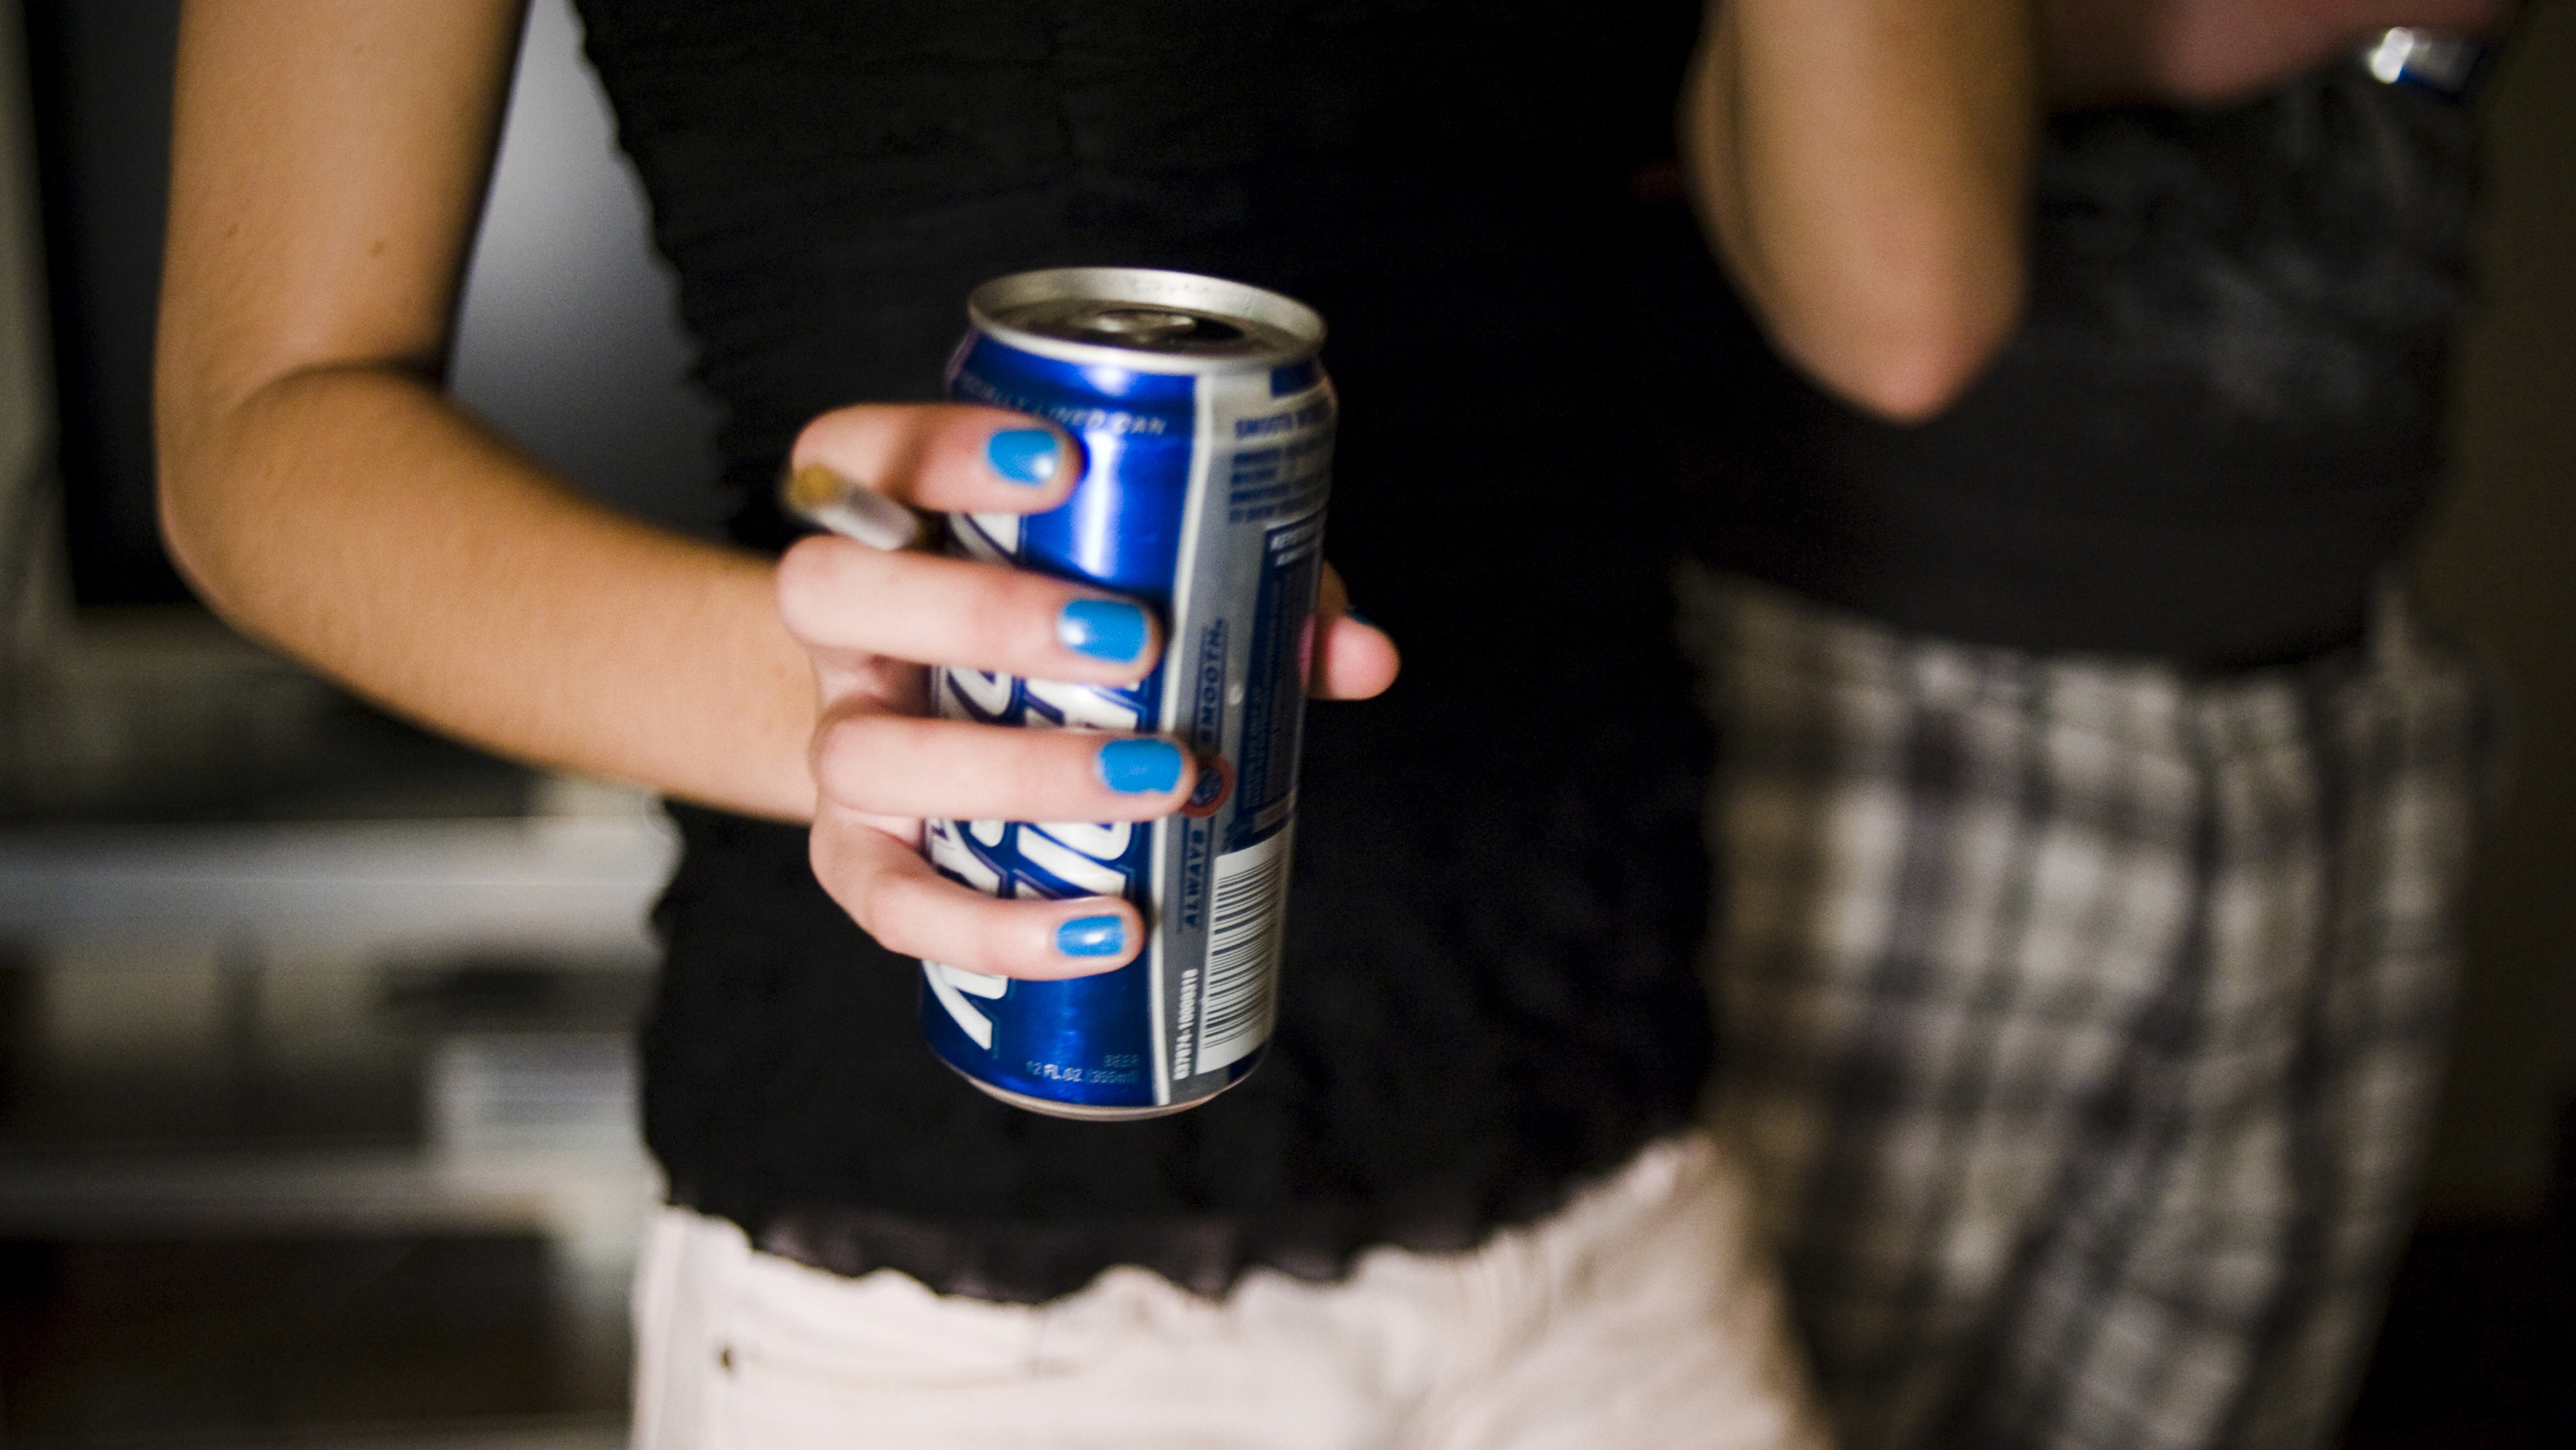 Consumo excessivo de álcool por jovens está ligado à menção de bebidas em músicas, diz pesquisa